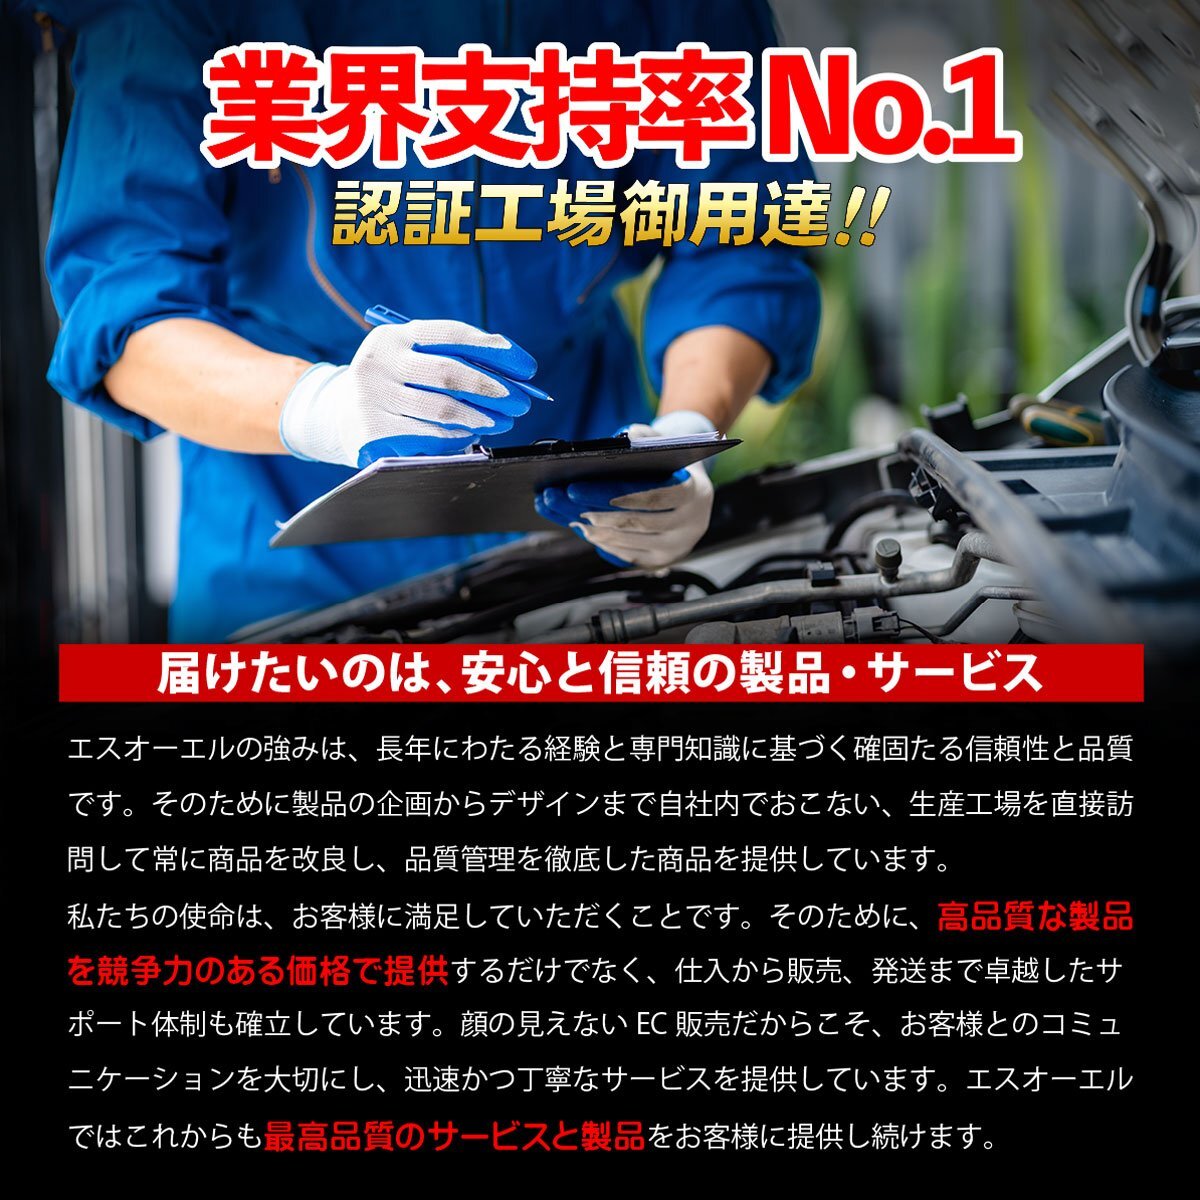  Suzuki Carry DF51V кондиционер компрессор отгрузка конечный срок 18 час марка машины особый дизайн 95200-72BC3 95200-72BC2 core возврат не необходимо 